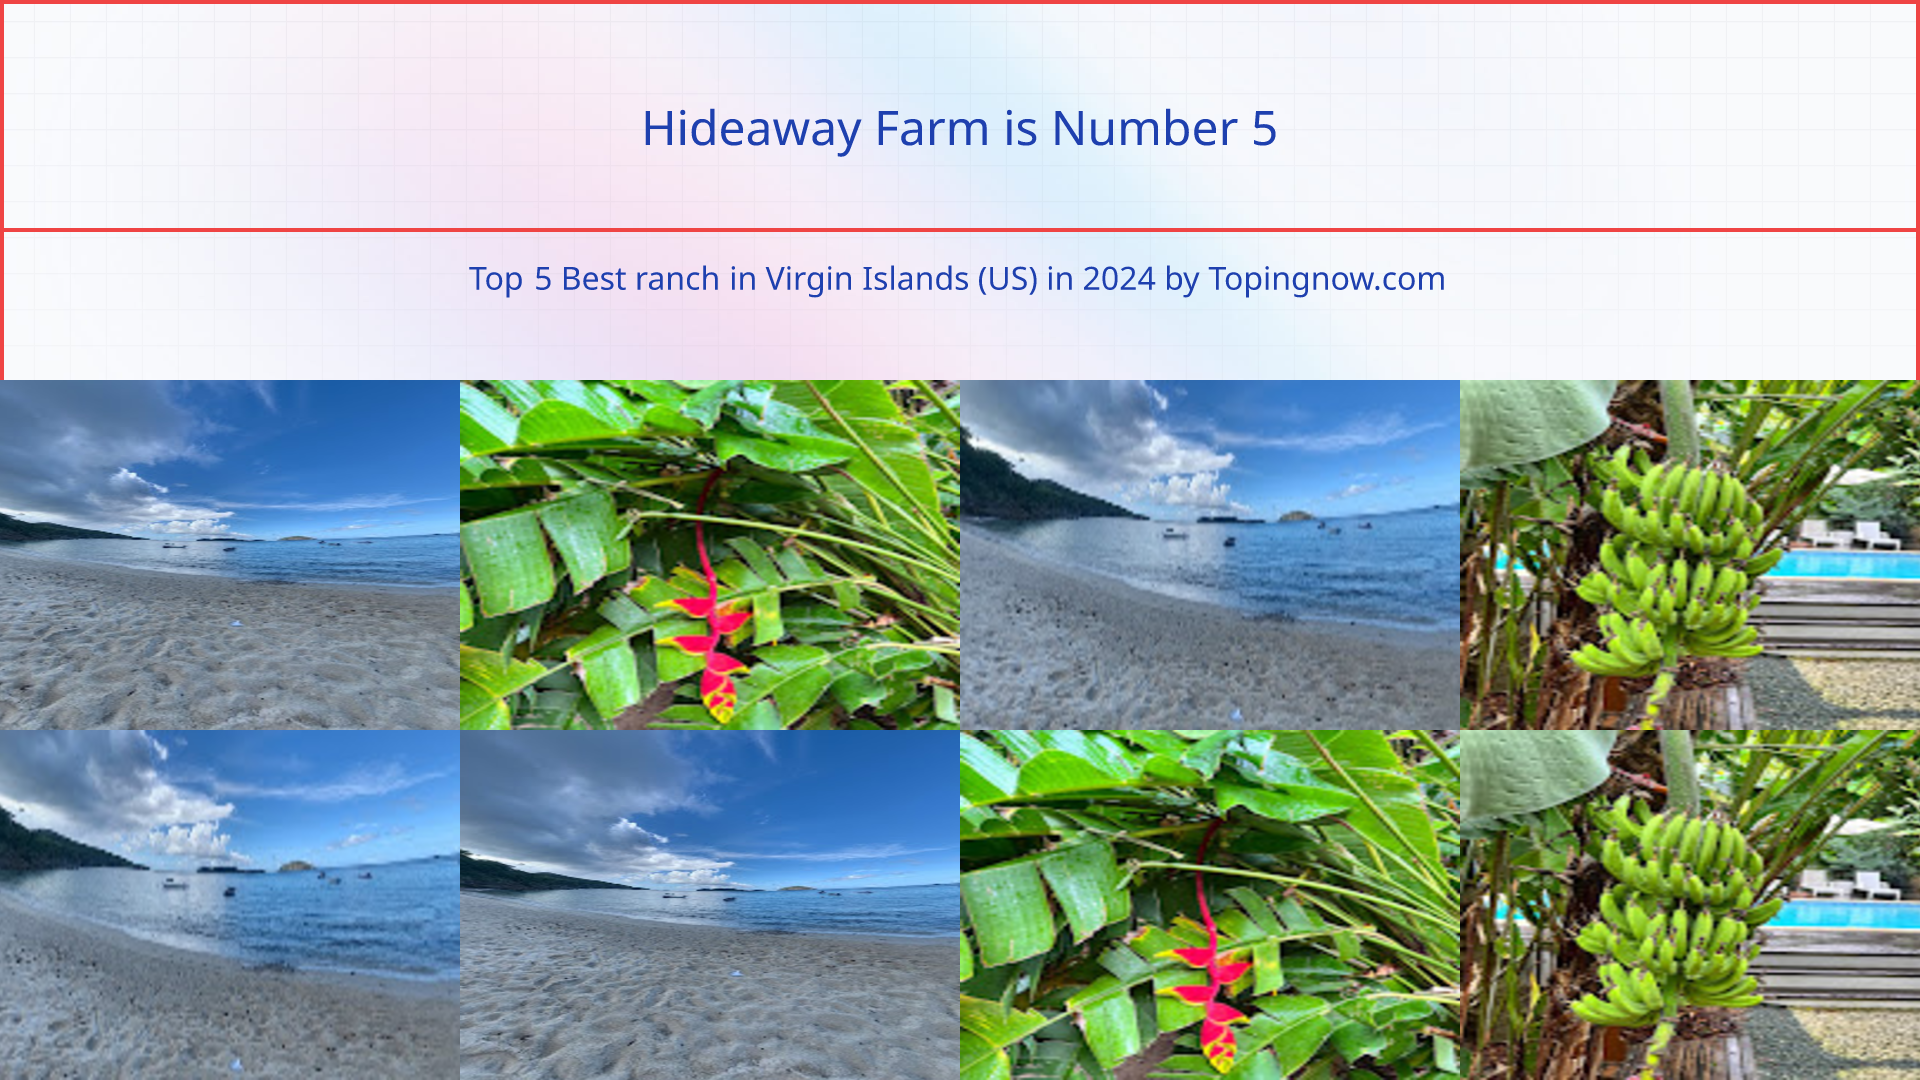 Hideaway Farm: Top 5 Best ranch in Virgin Islands (US) in 2024